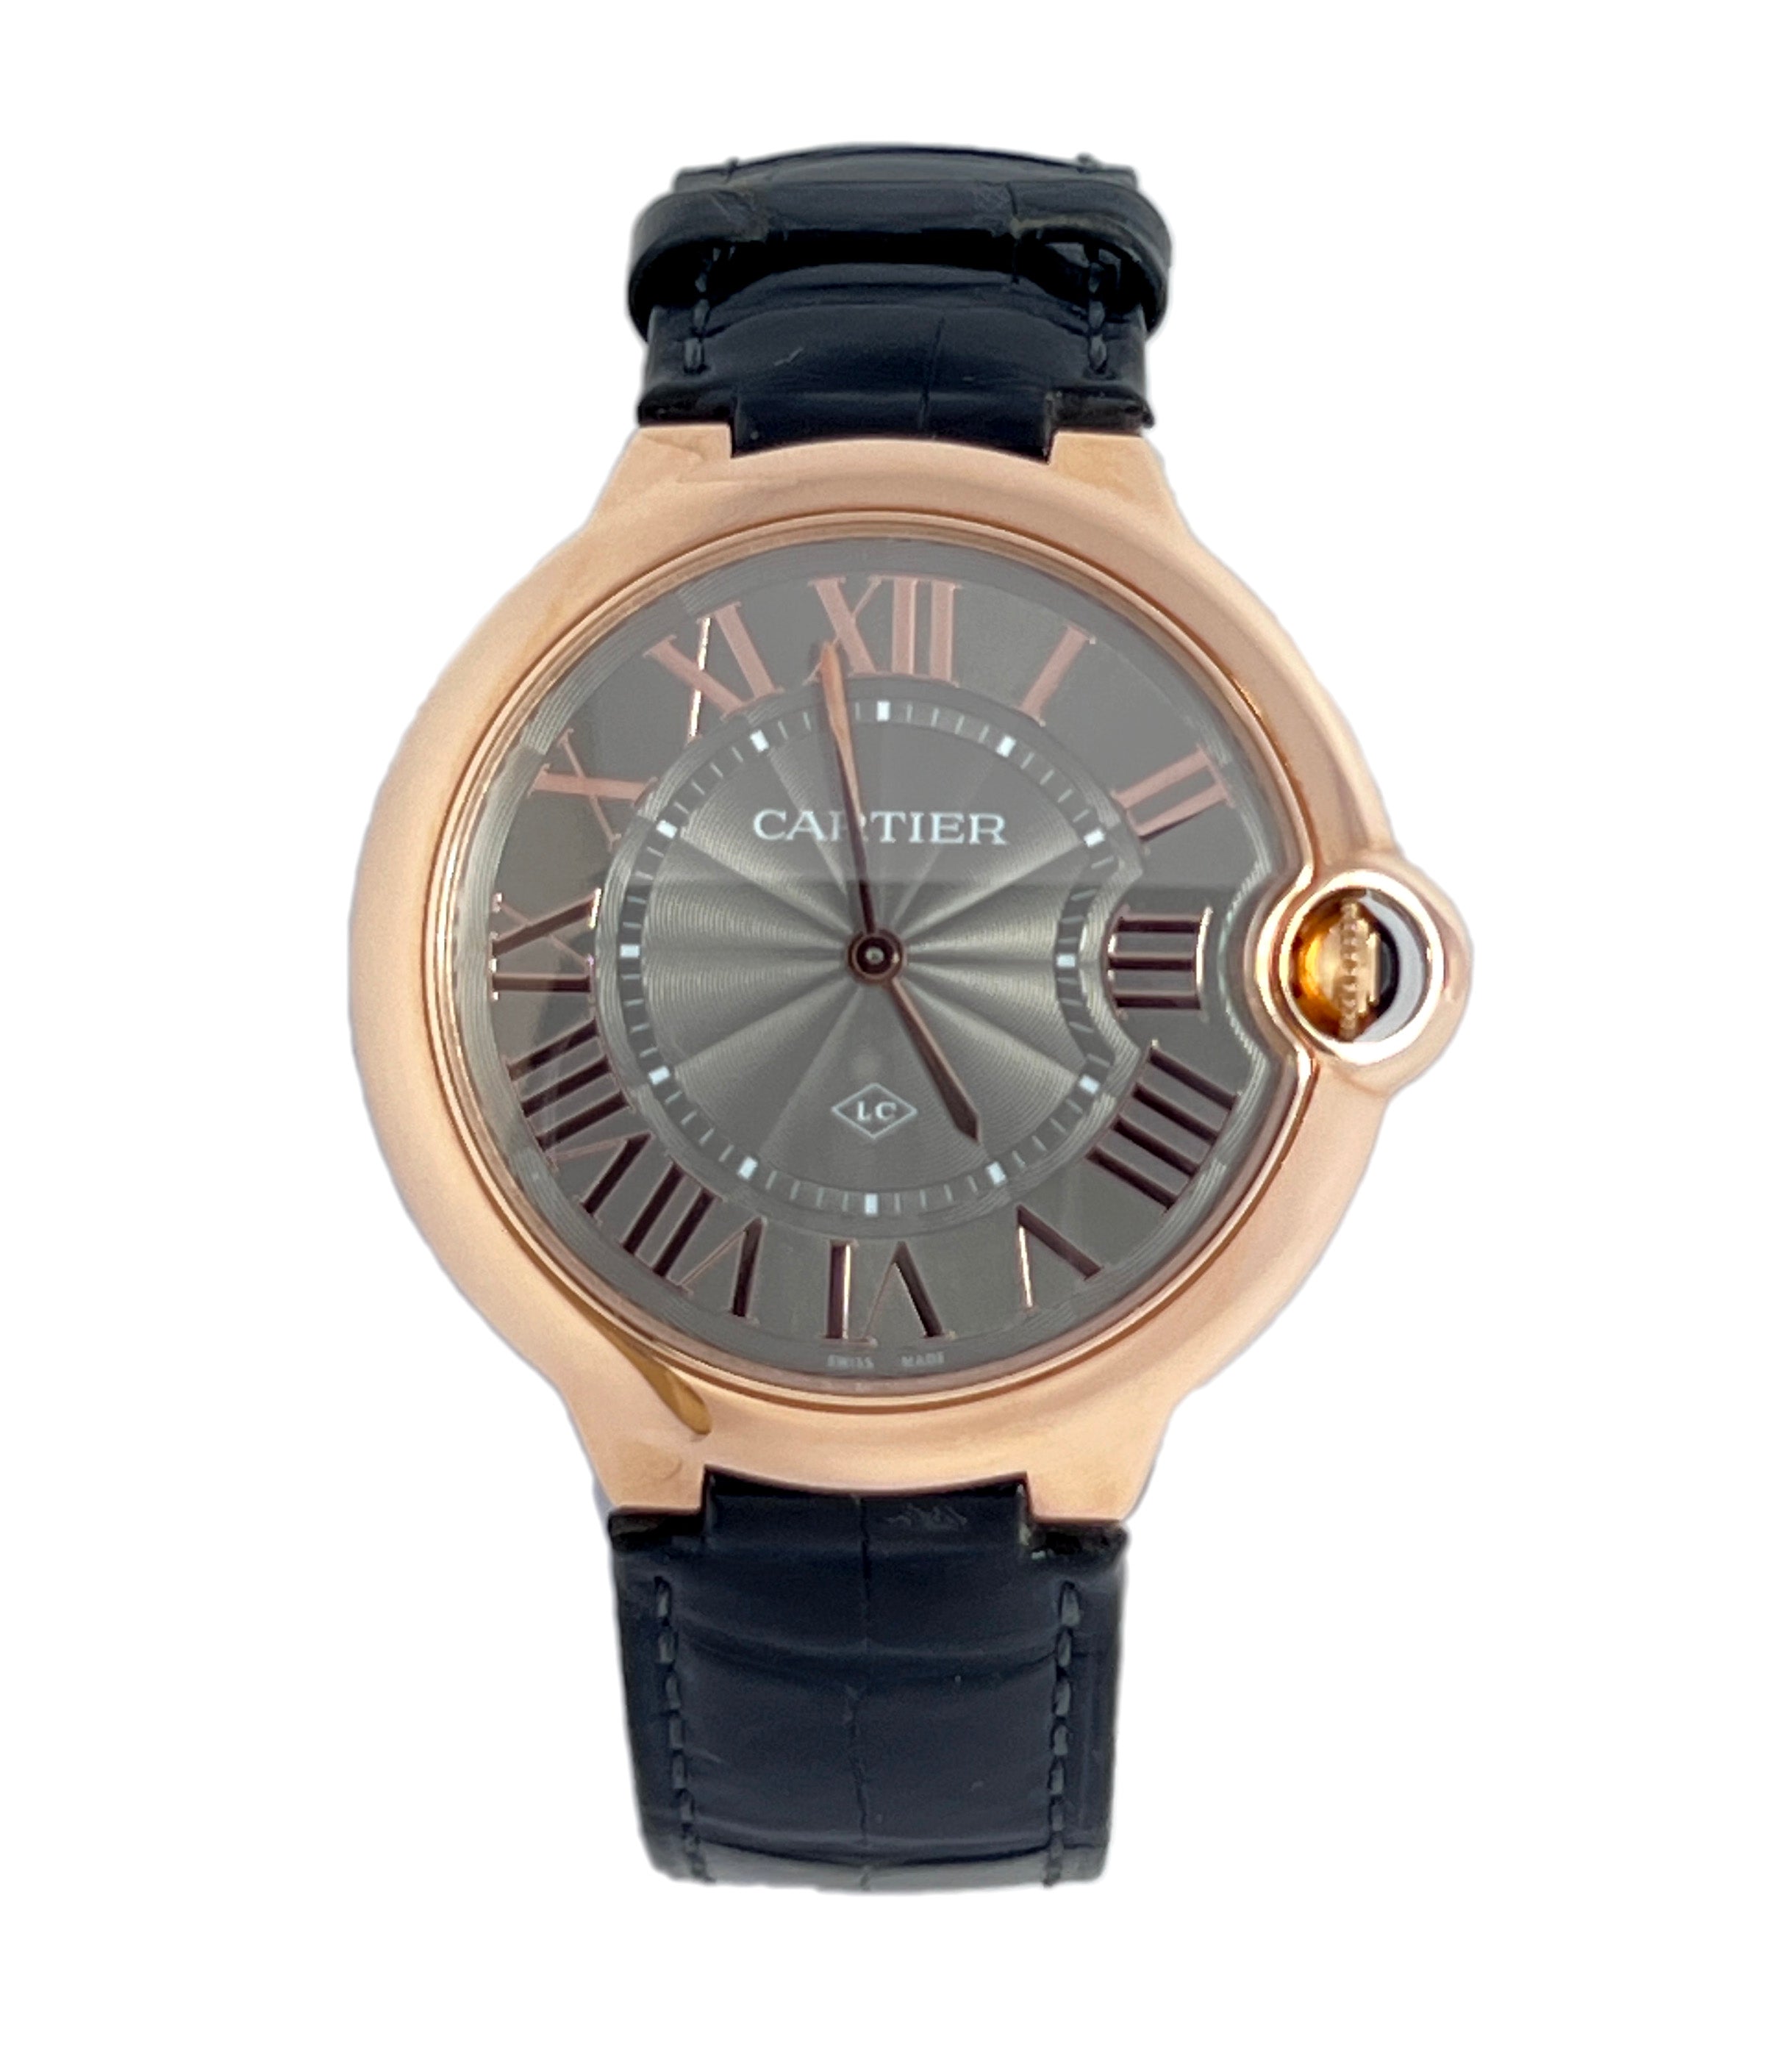 Cartier Ballon Bleu “LC” 18K Rose Gold Unisex Watch